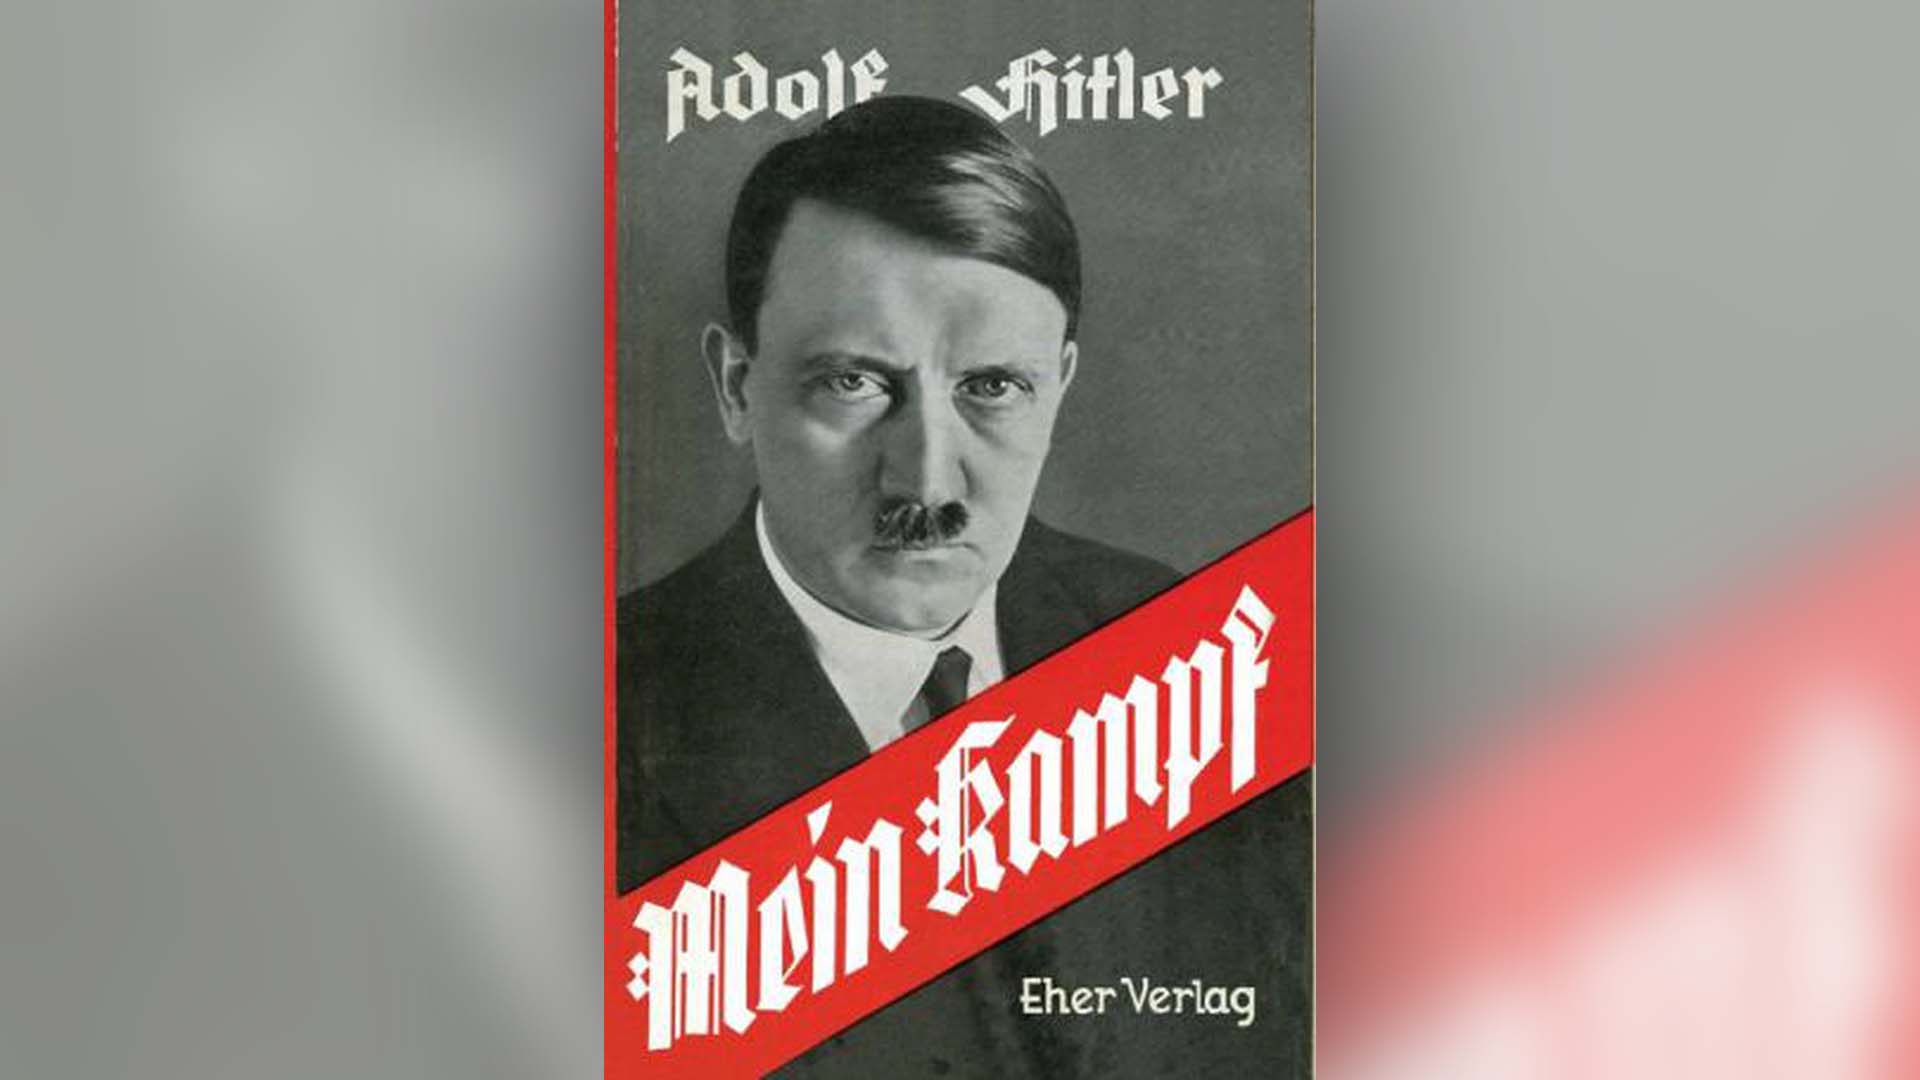 Mein Kampf, el libro donde Hitler escribió su ideario, el germen del mal